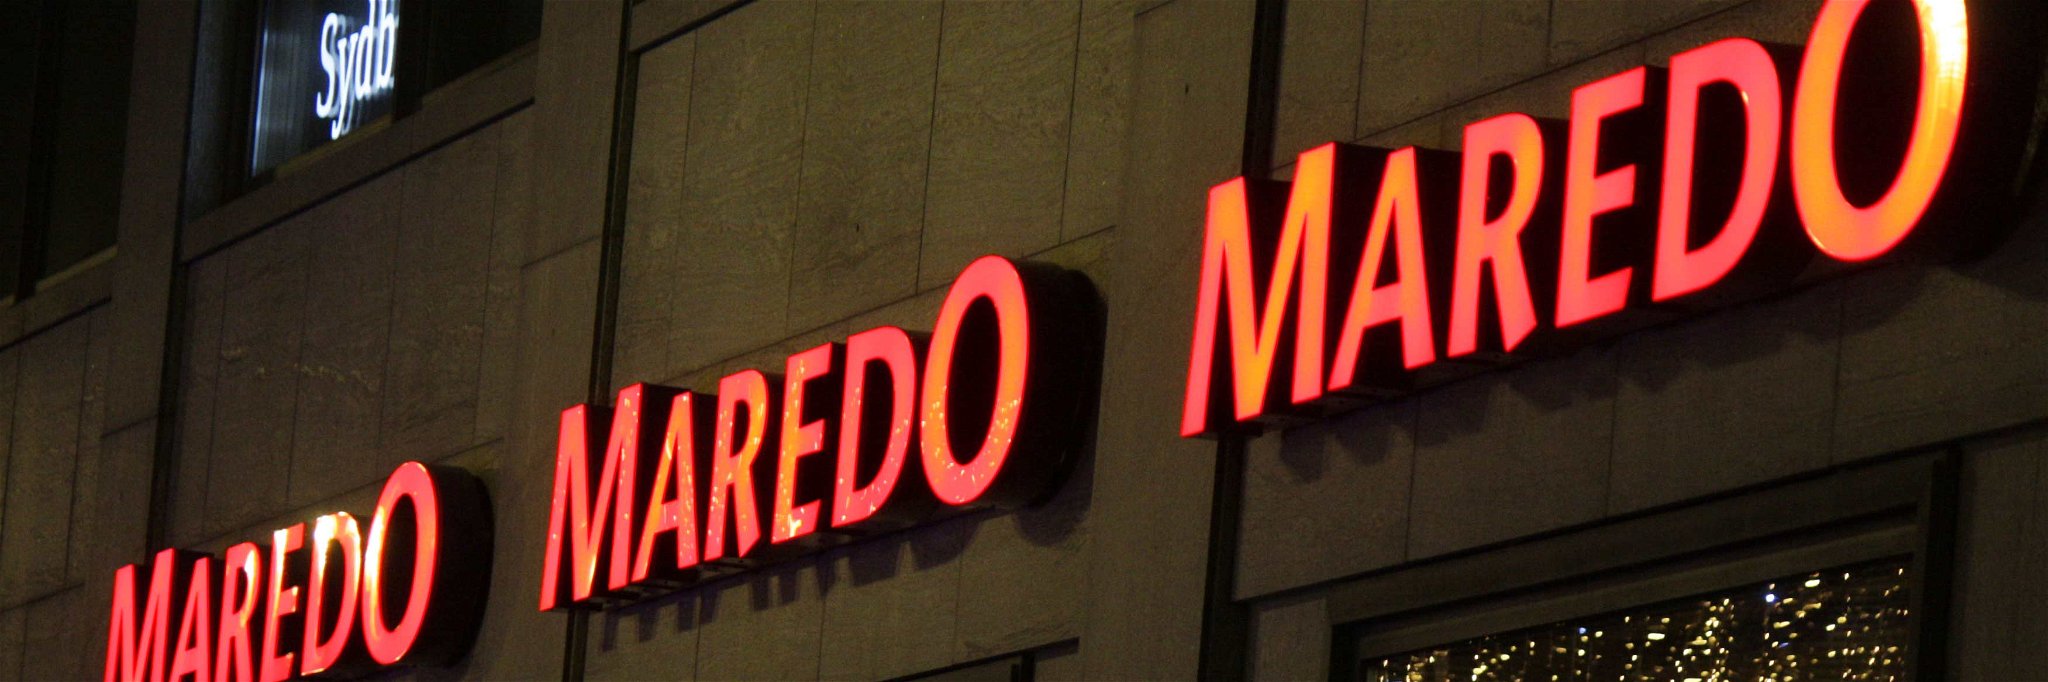 Nicht nur für »Maredo« sind es dunkle Zeiten.